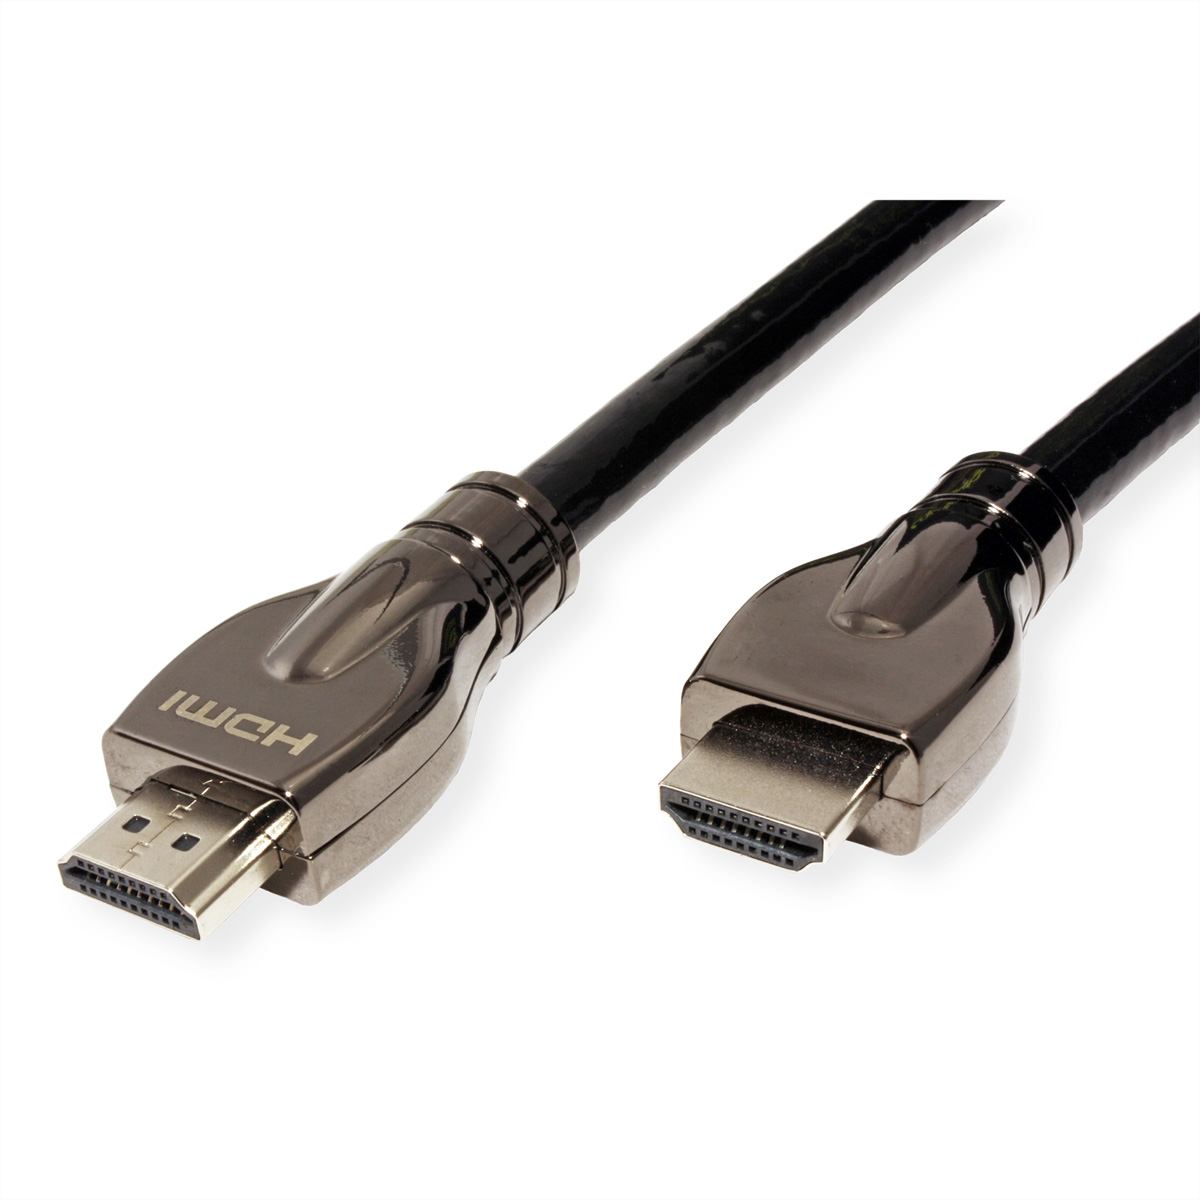 ROLINE 4K ST/ST HD HD HDMI Ultra HDMI Kabel mit Ethernet mit Ultra Ethernet, Kabel